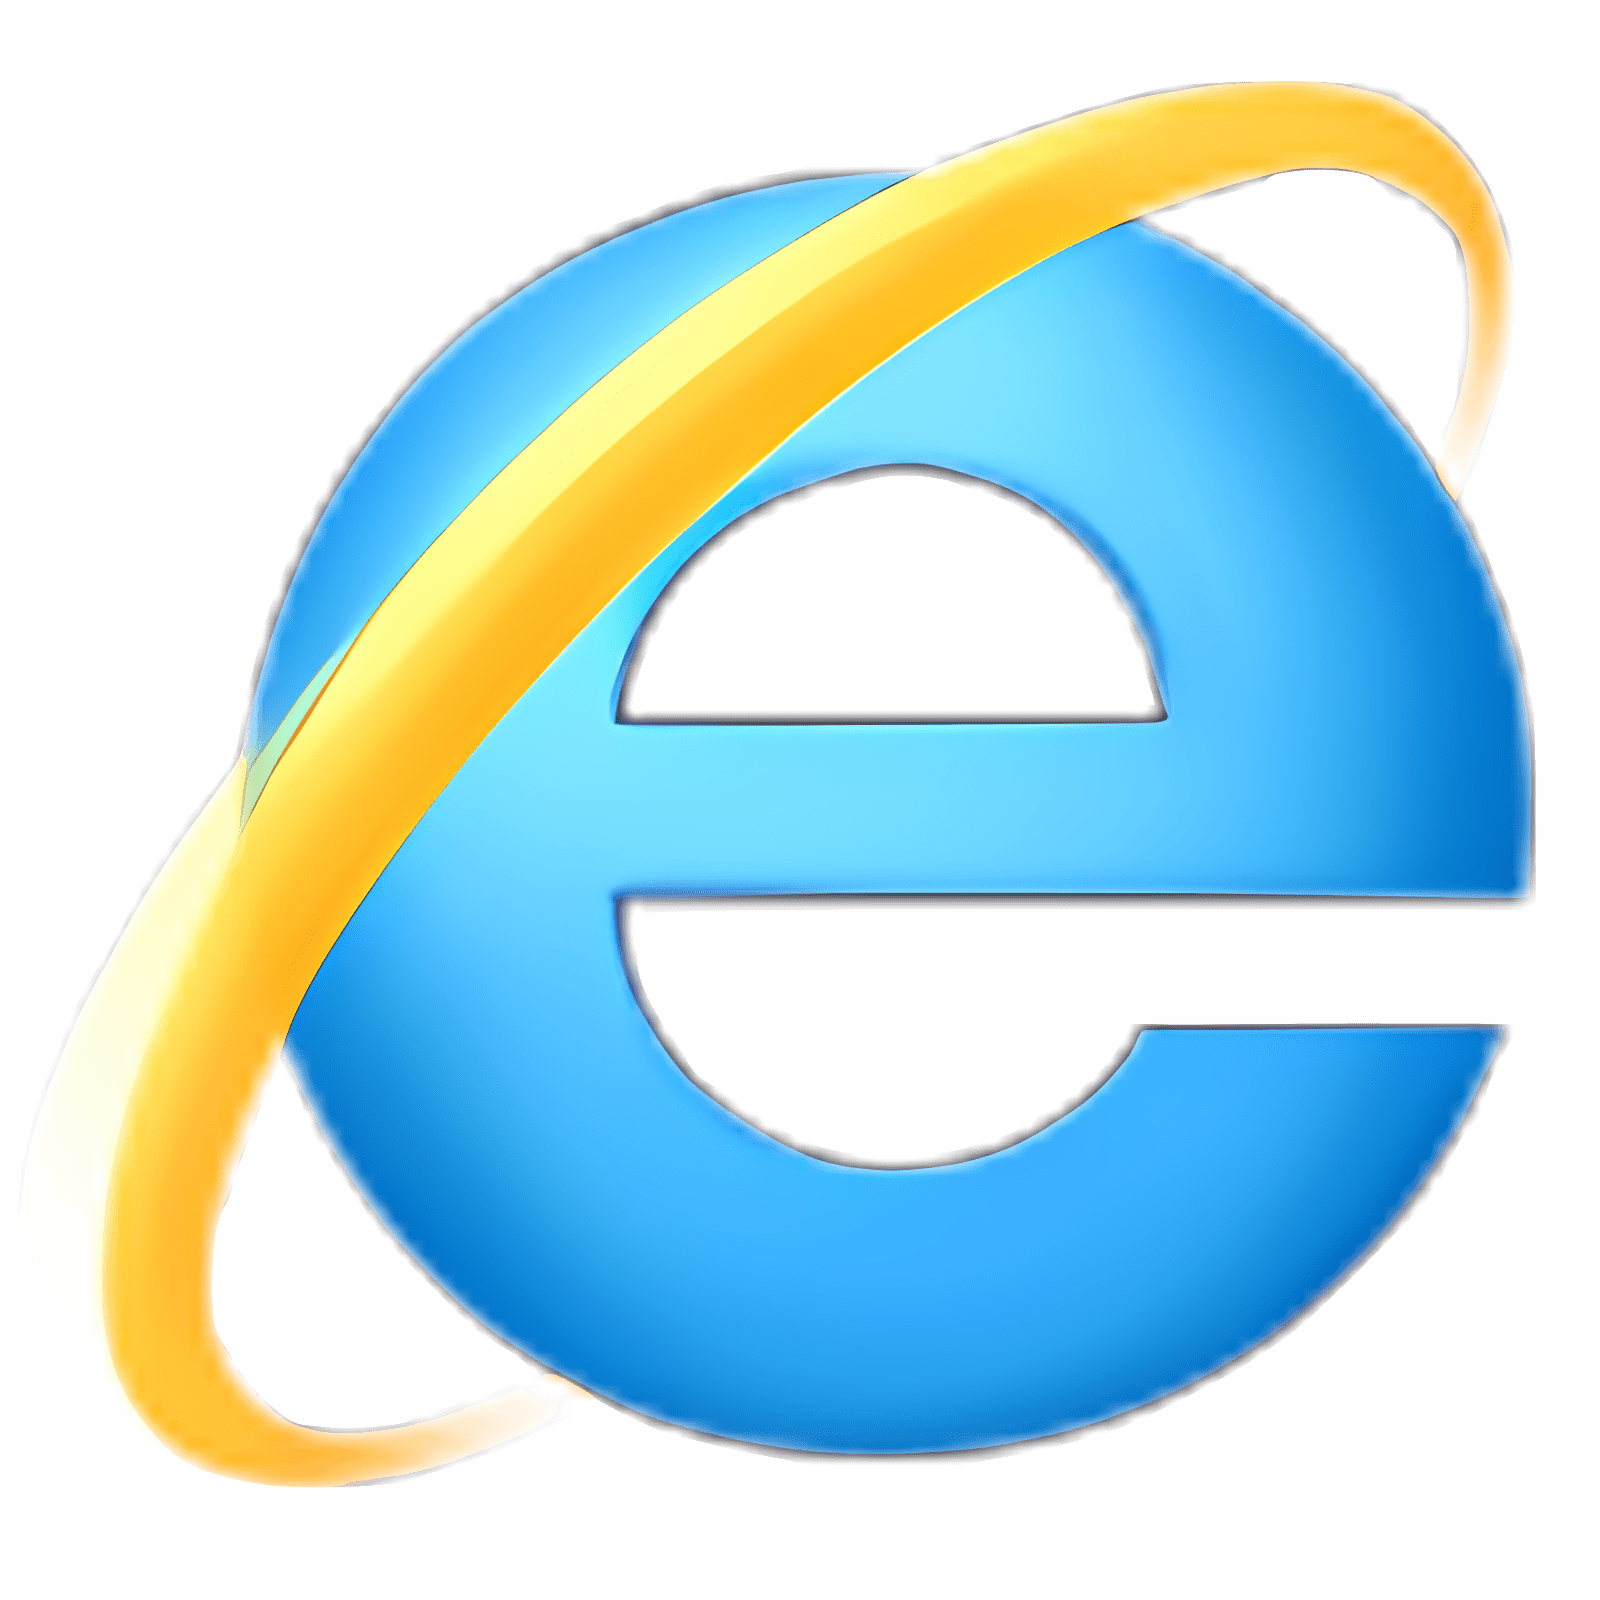 download internet explorer 11 for windows 7 64 bit home basic